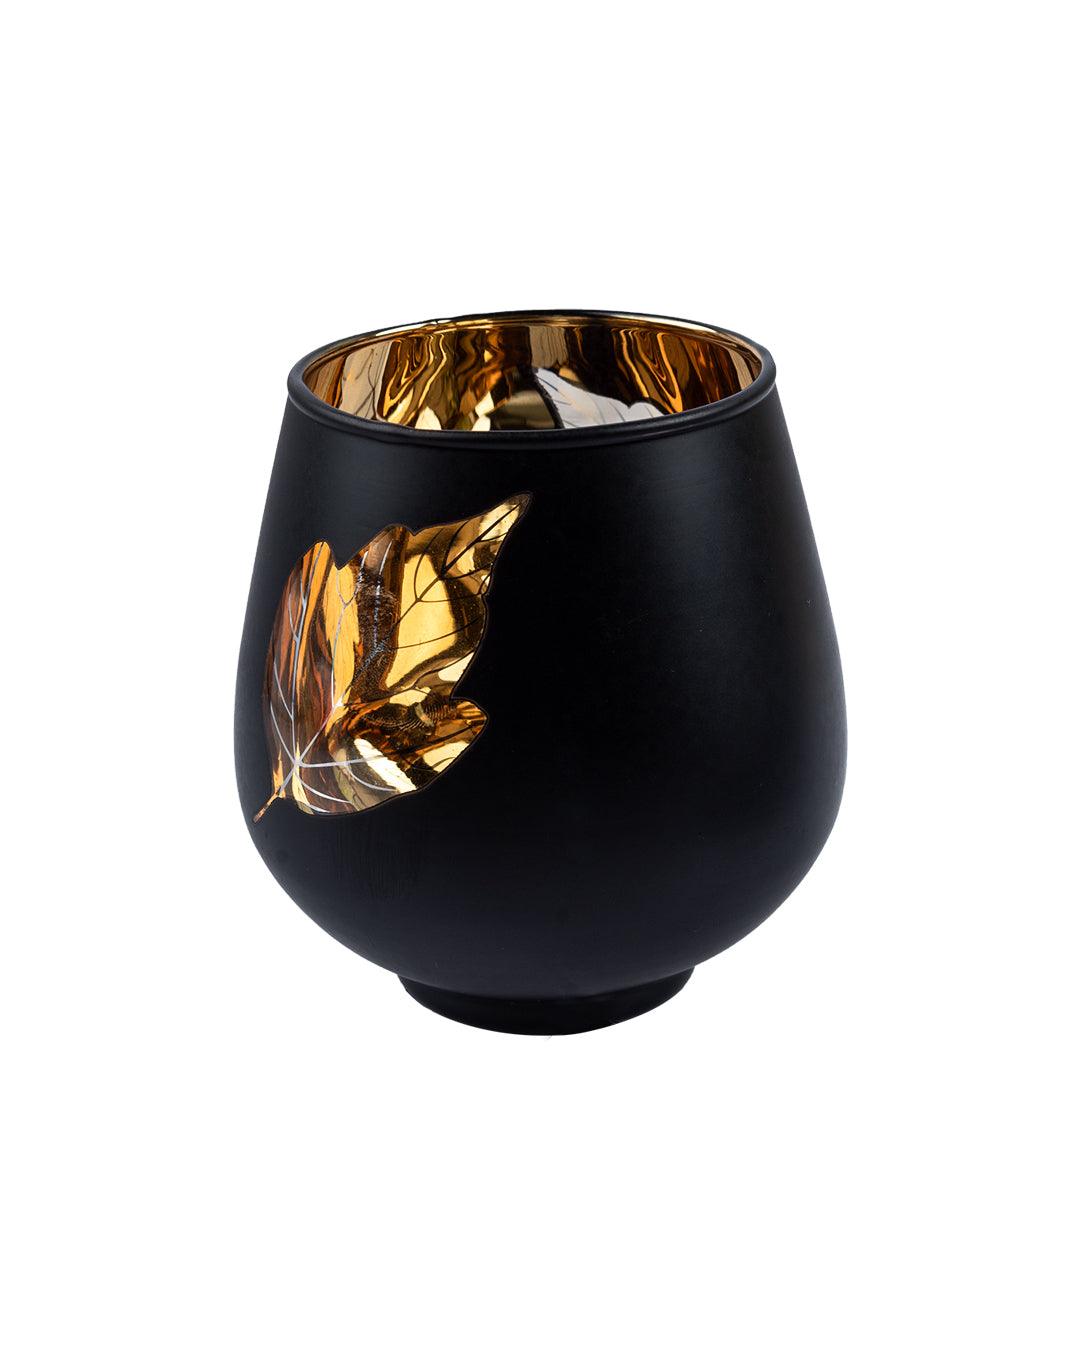 T-light Holder, Golden Leaf Pattern, Black, Glass - MARKET 99